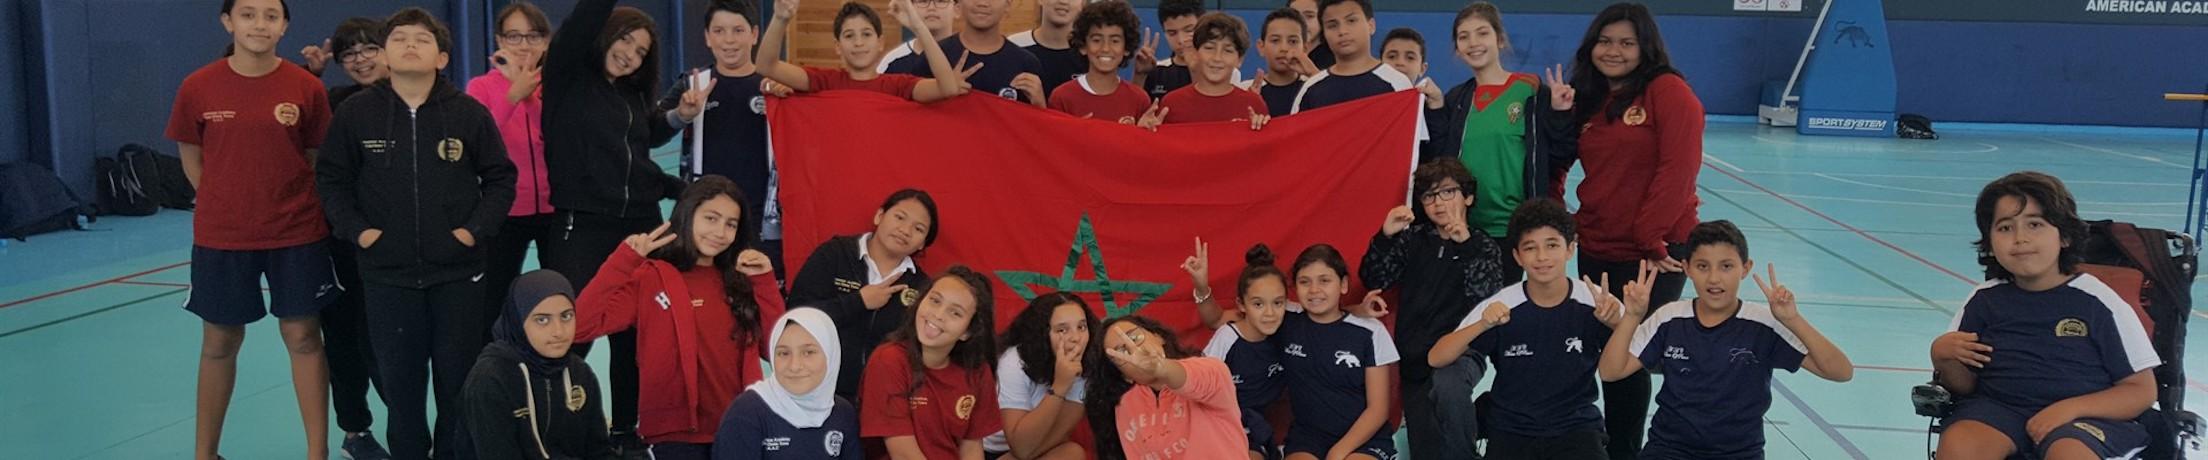 American Academy Casablanca (Morocco) image